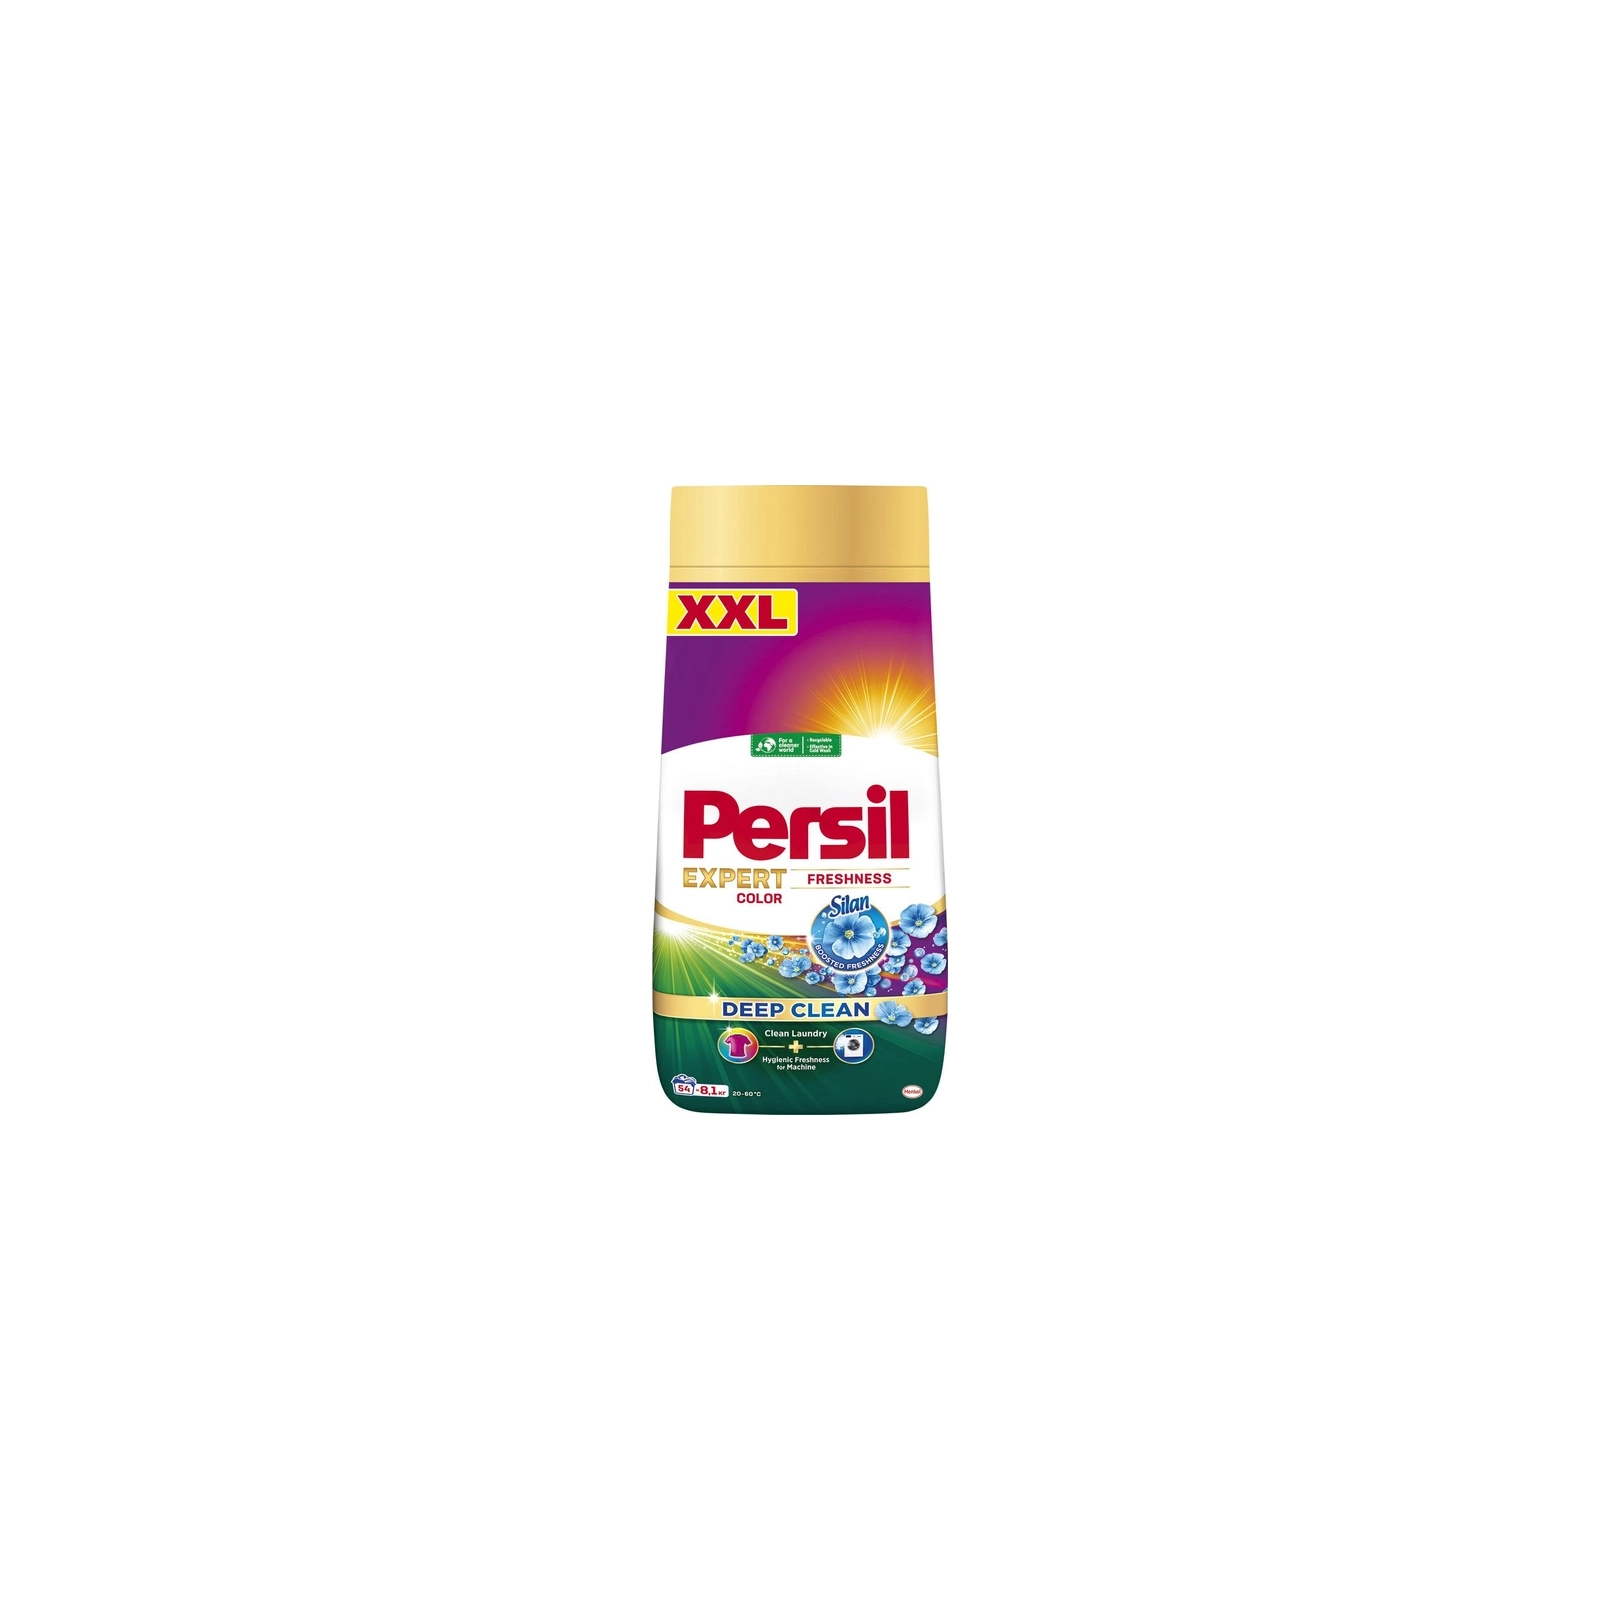 Стиральный порошок Persil Expert Deep Clean Автомат Color Свежесть от Silan 8.1 кг (9000101806427)